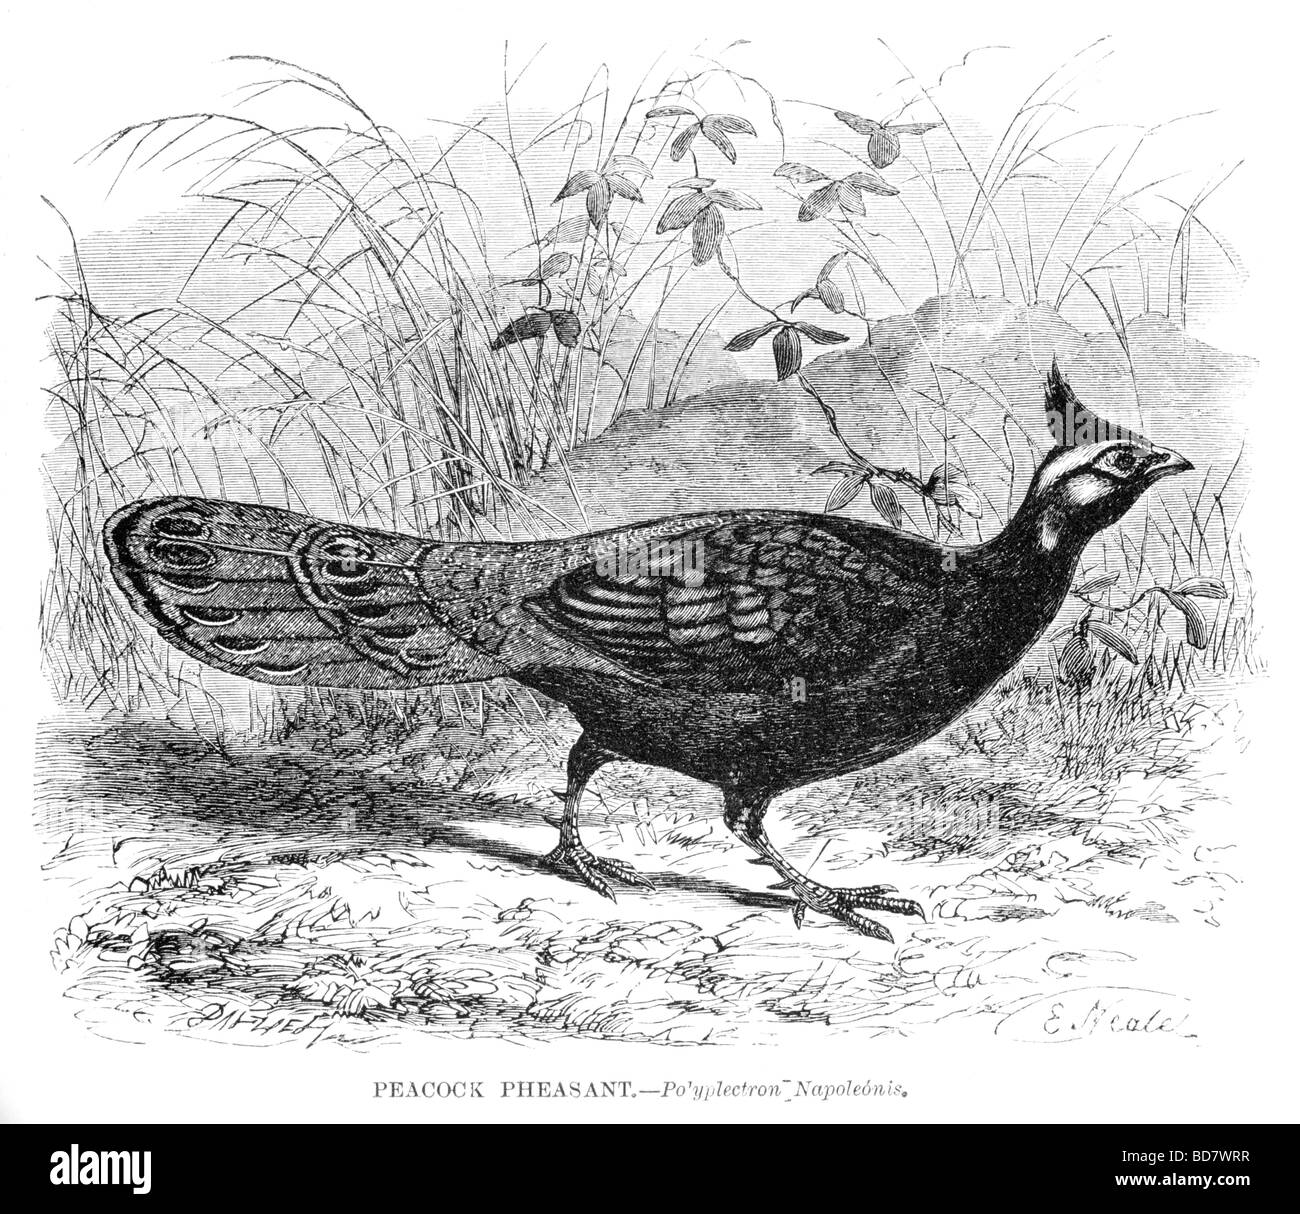 peacock pheasant po yplectron napoleonis Stock Photo